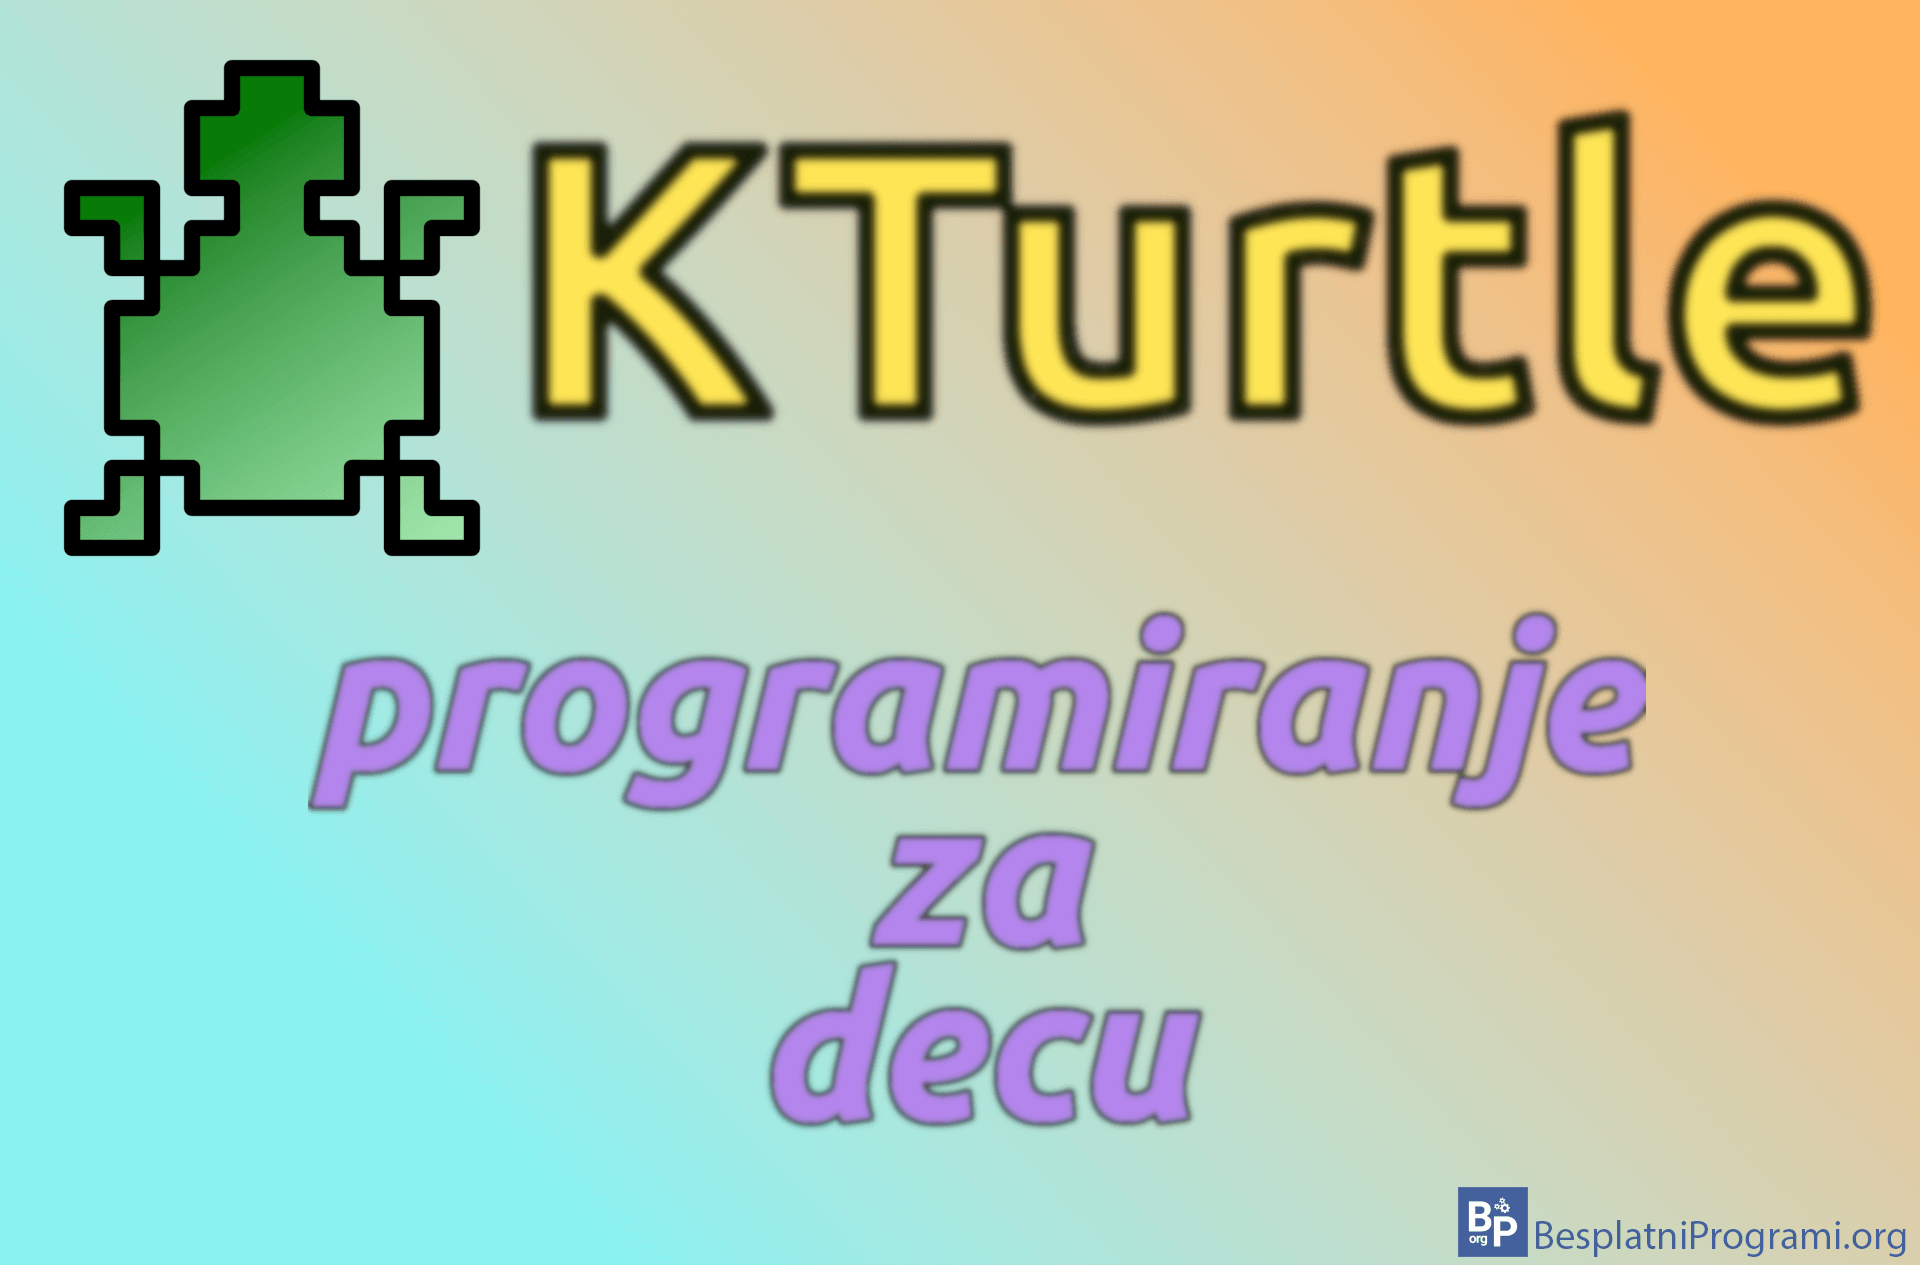 KTurtle – programiranje za decu